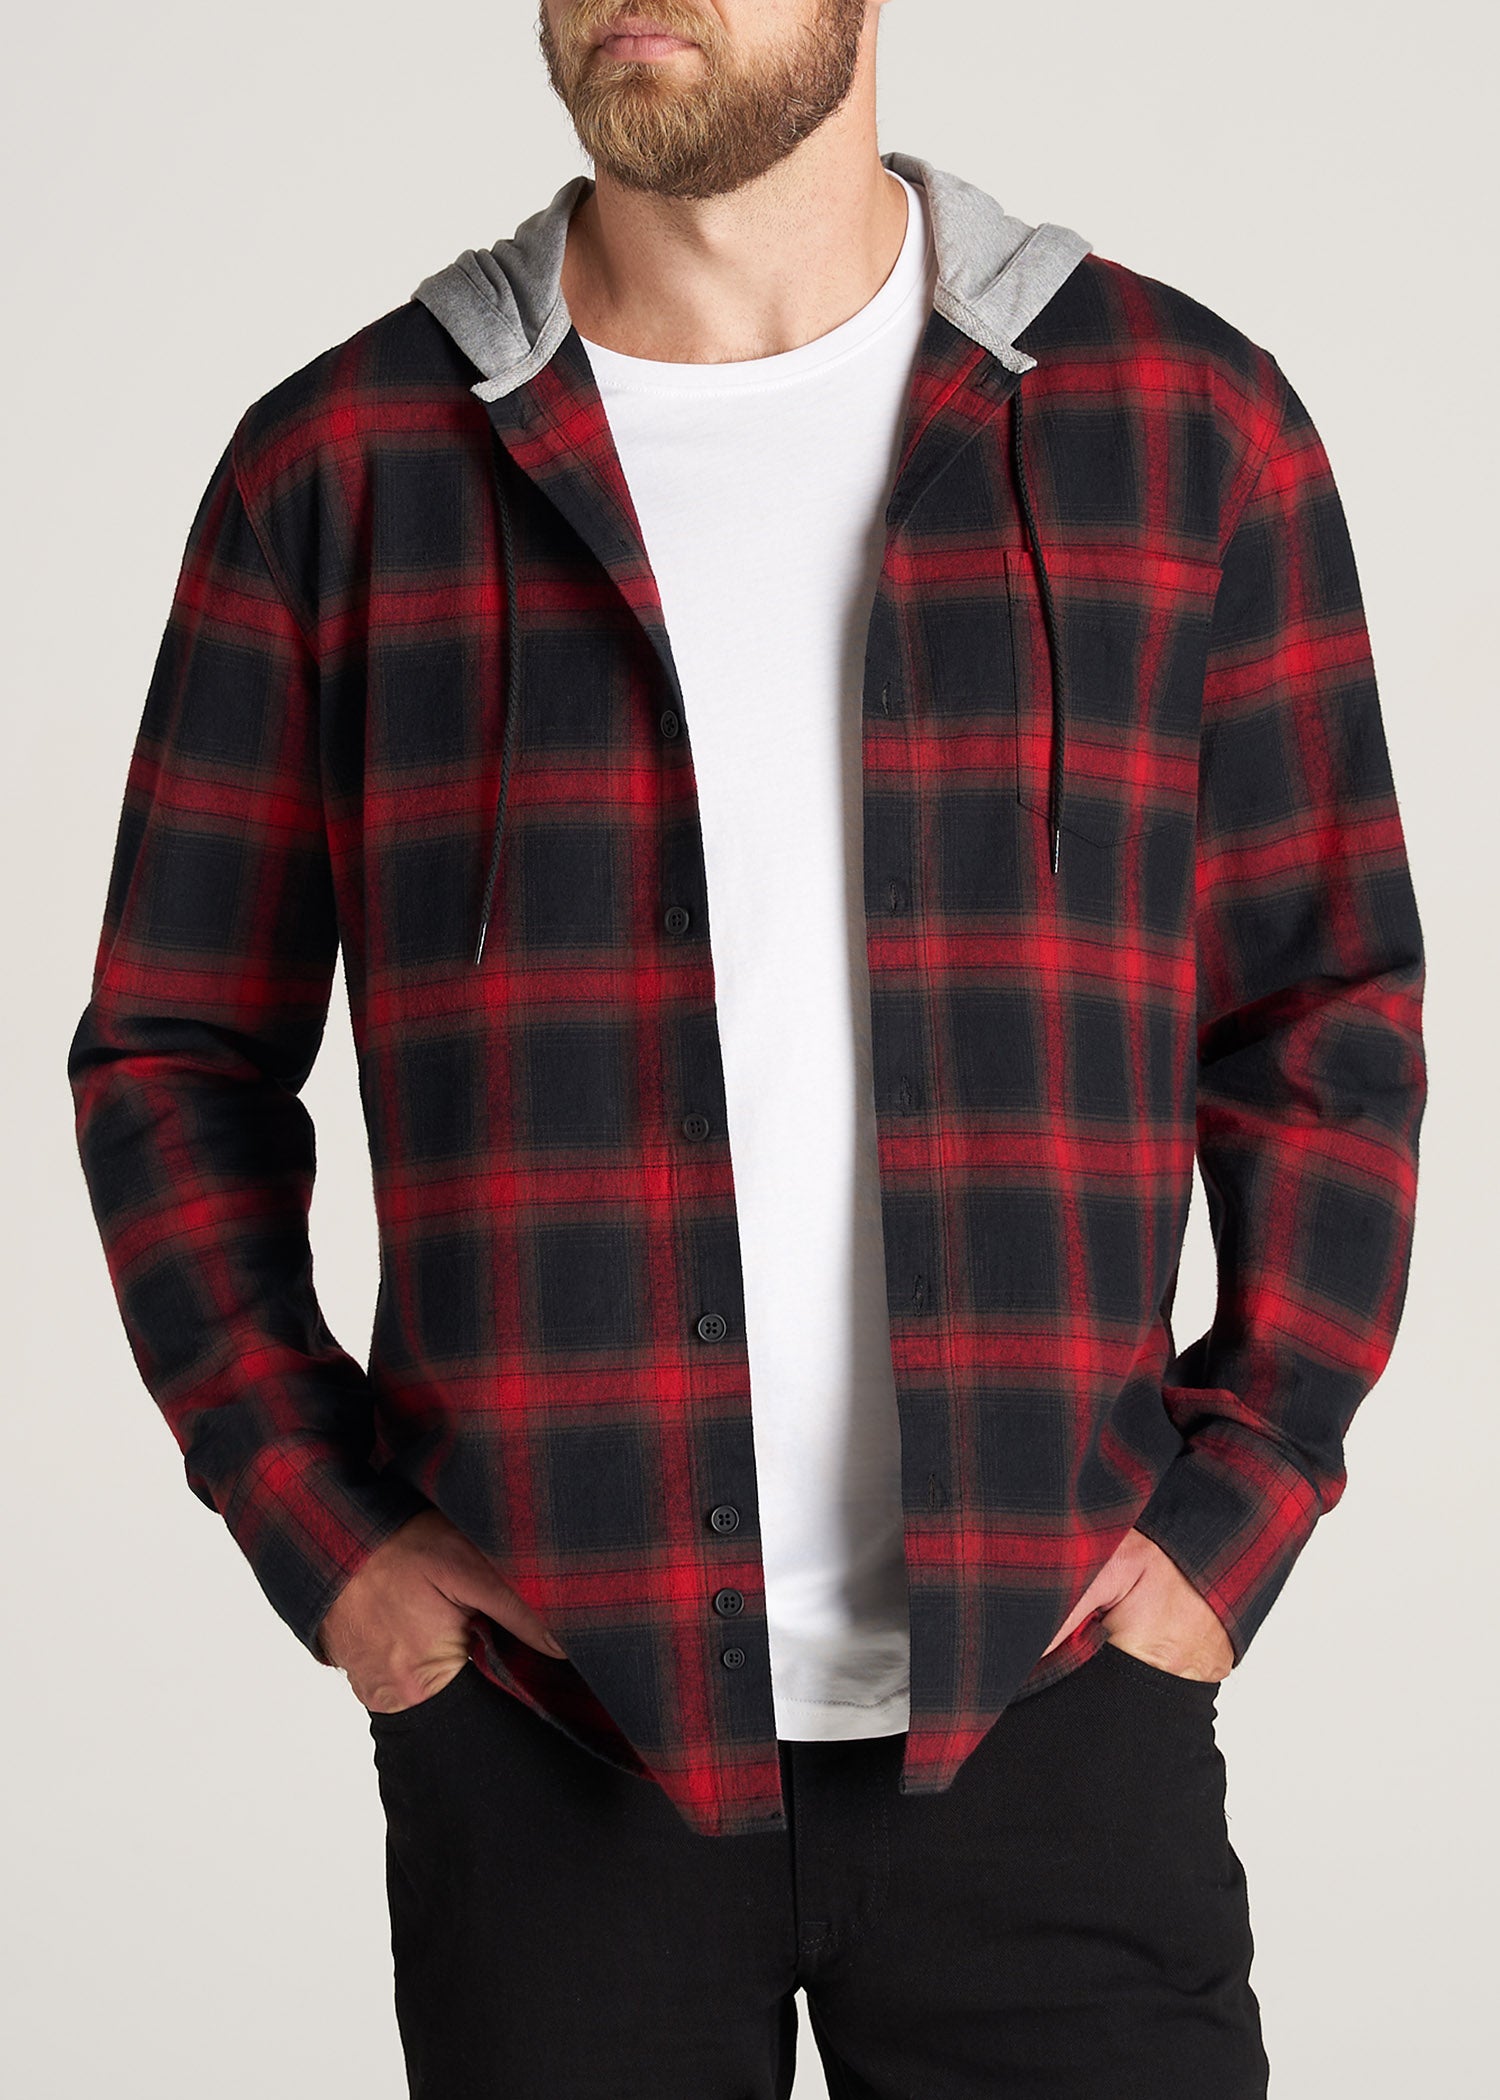     American-Tall-Men-LJ-Hooded-FlannelShirt-BlackRedPlaid-front